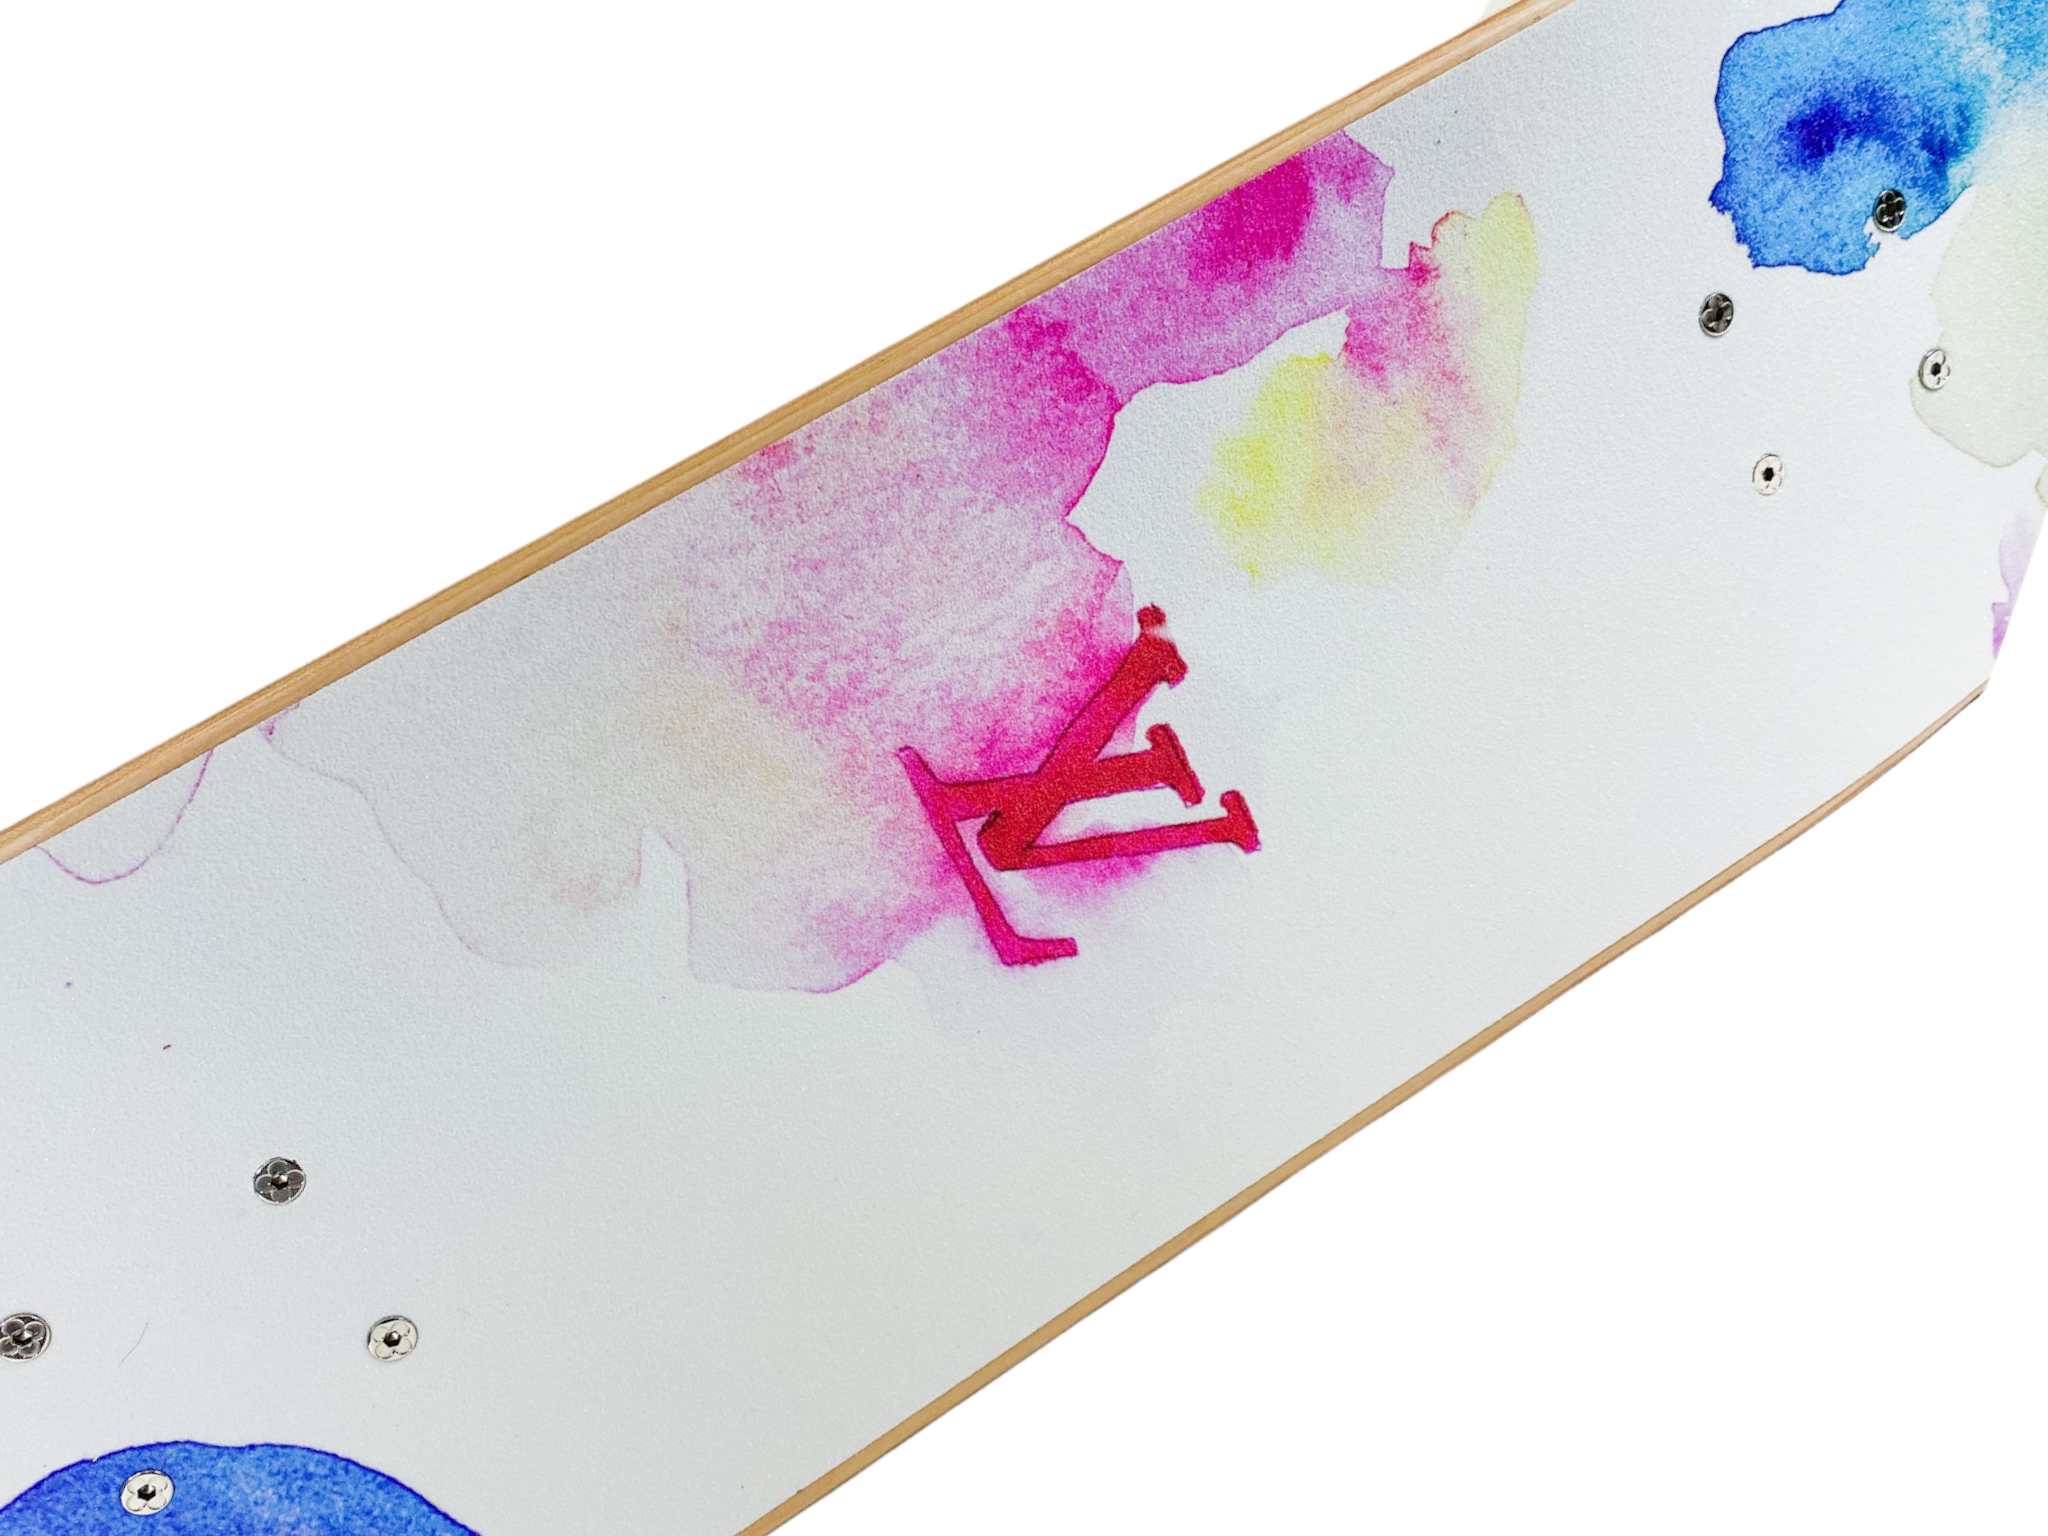 Louis Vuitton Watercolor Skateboard – Connor Langley